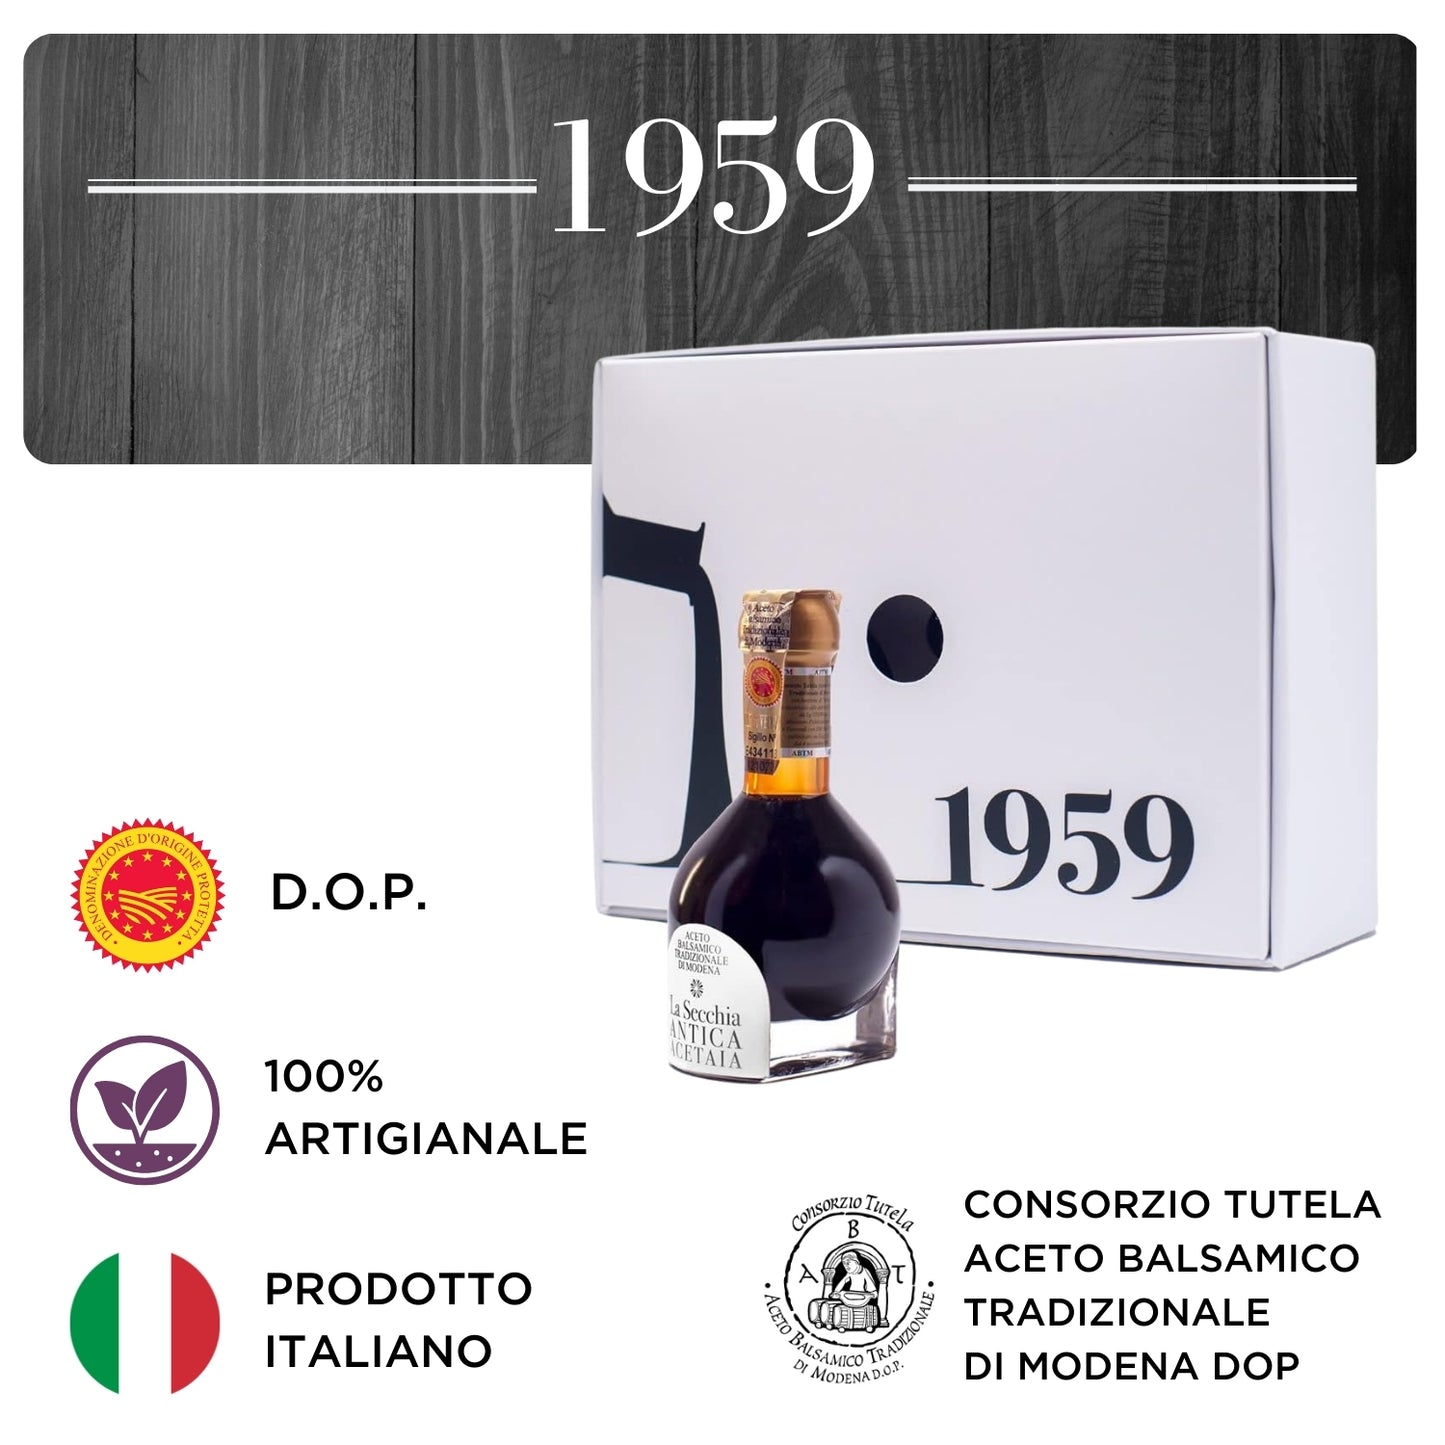 Aceto Balsamico Tradizionale di Modena D.O.P. 1959 RISERVA